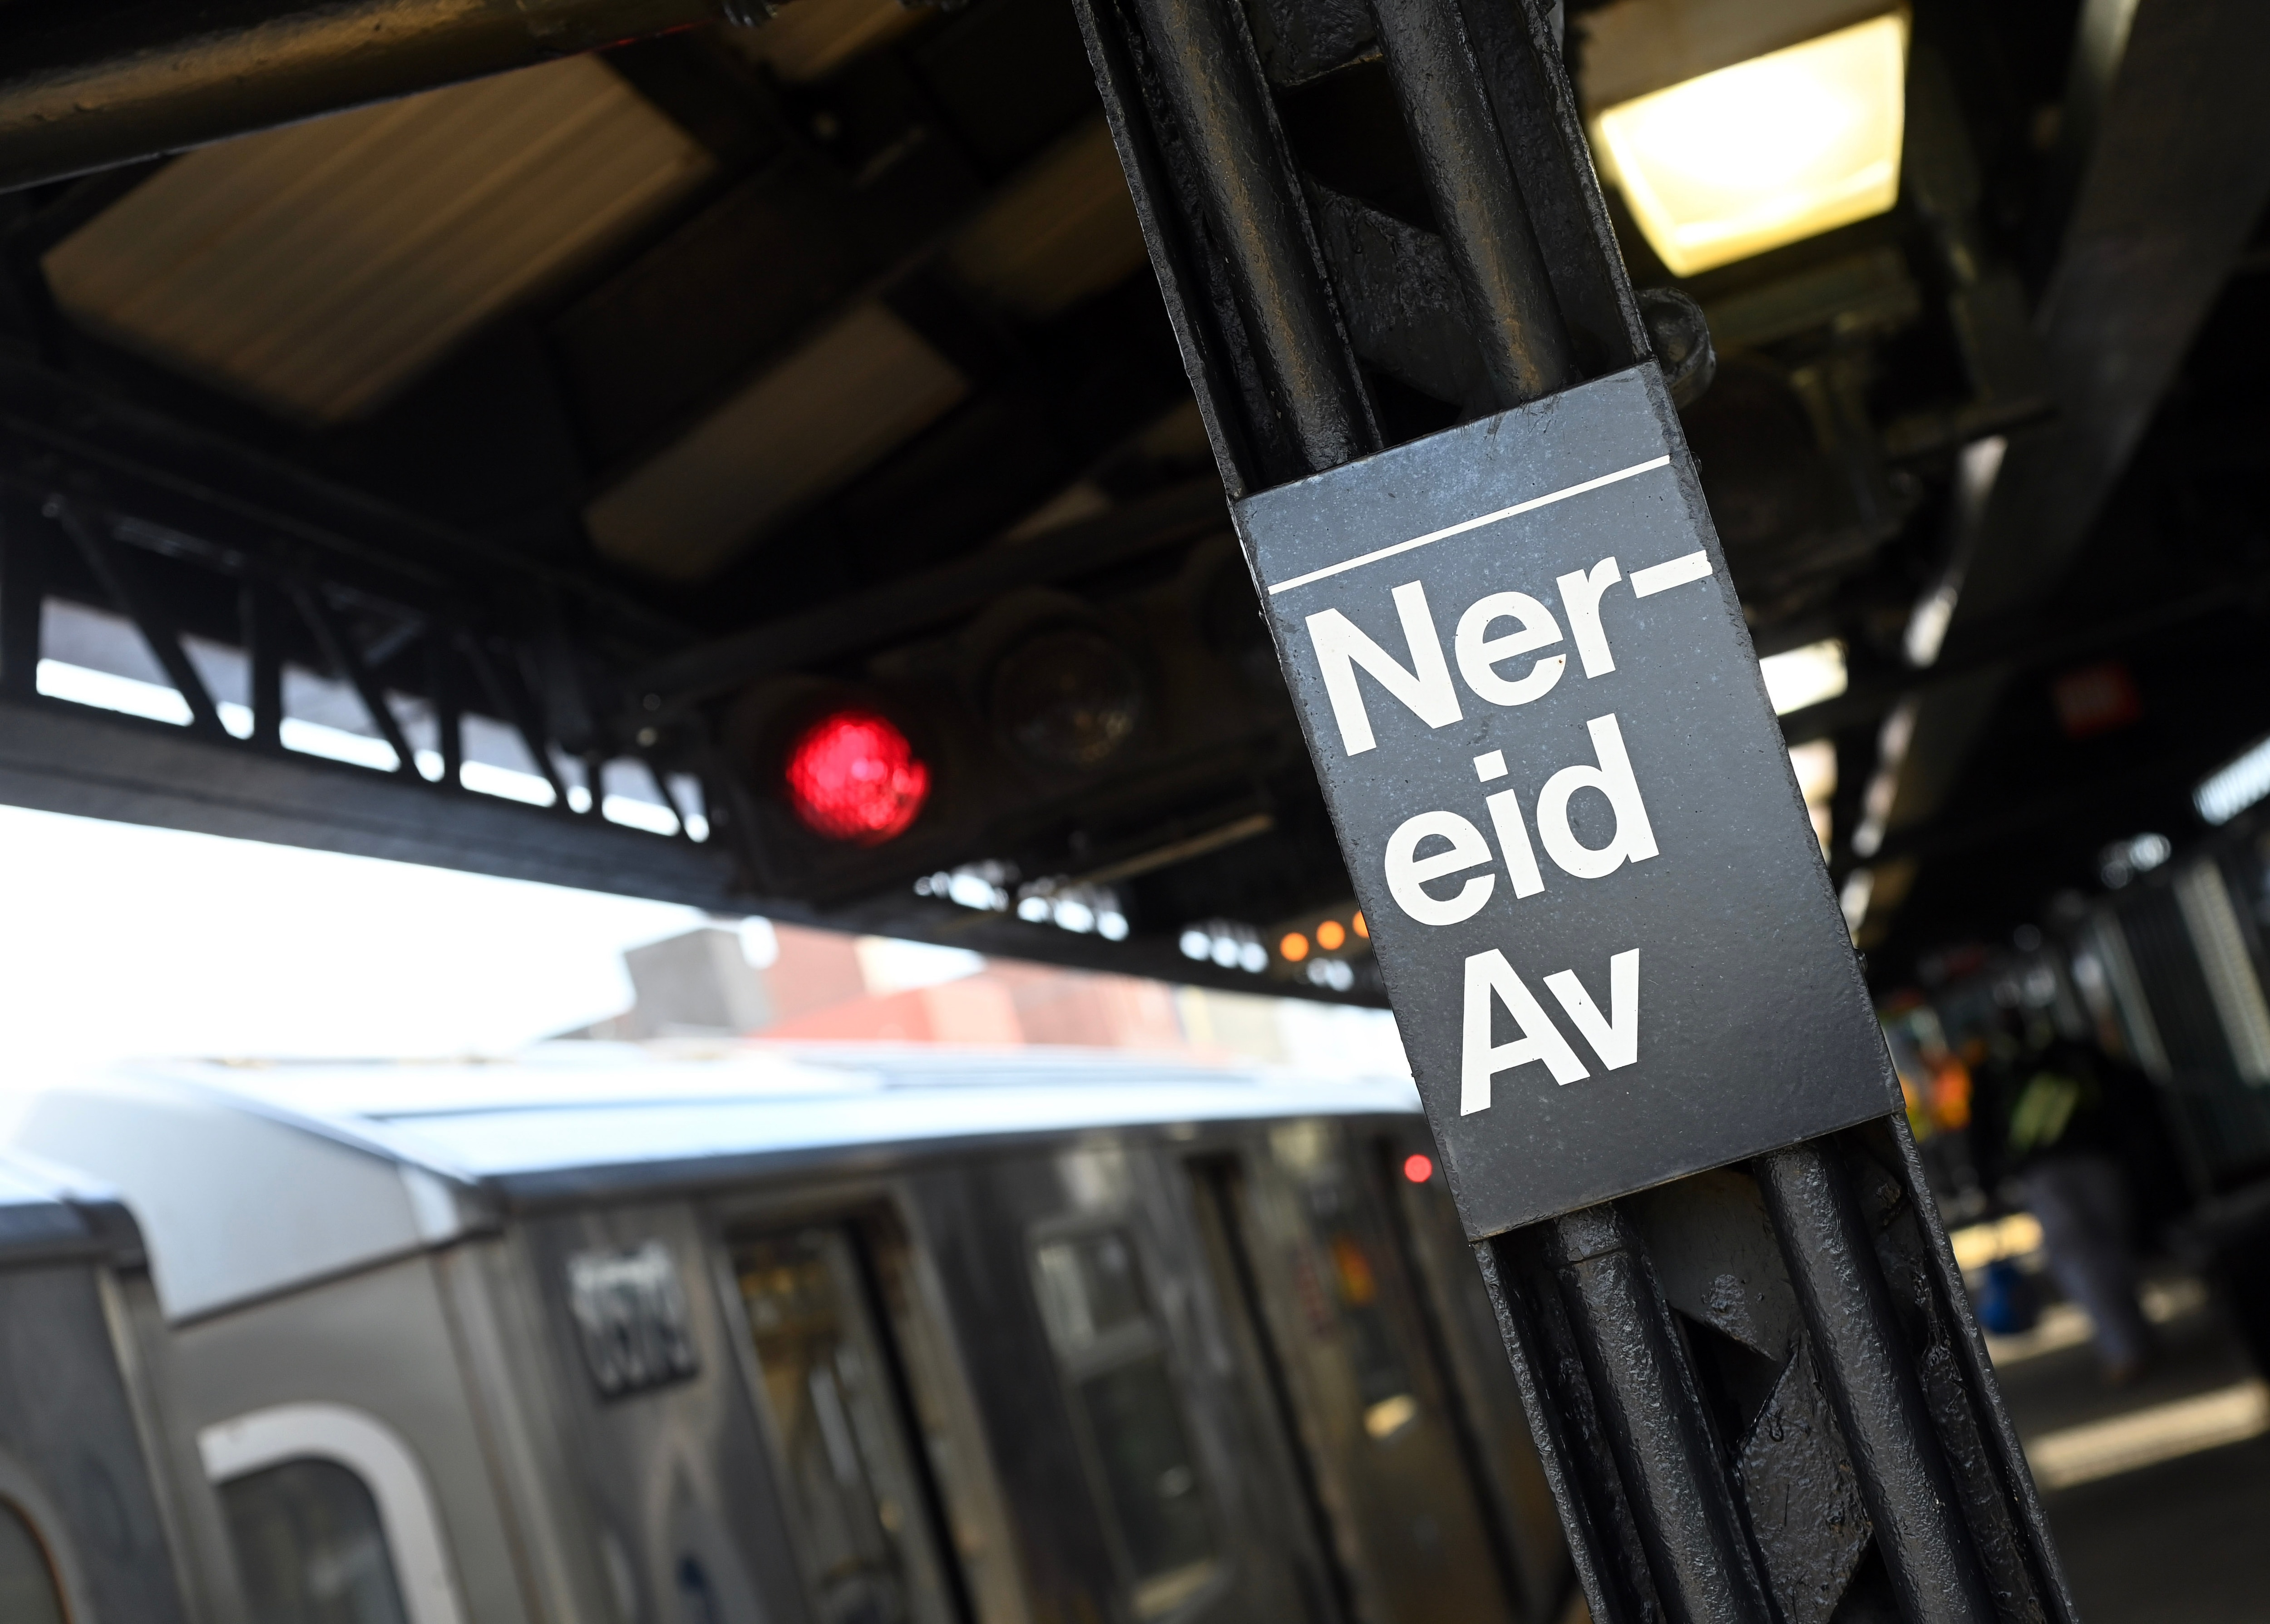 PHOTOS: MTA Completes Re-NEW-vation at Nereid Av 2/5 Station